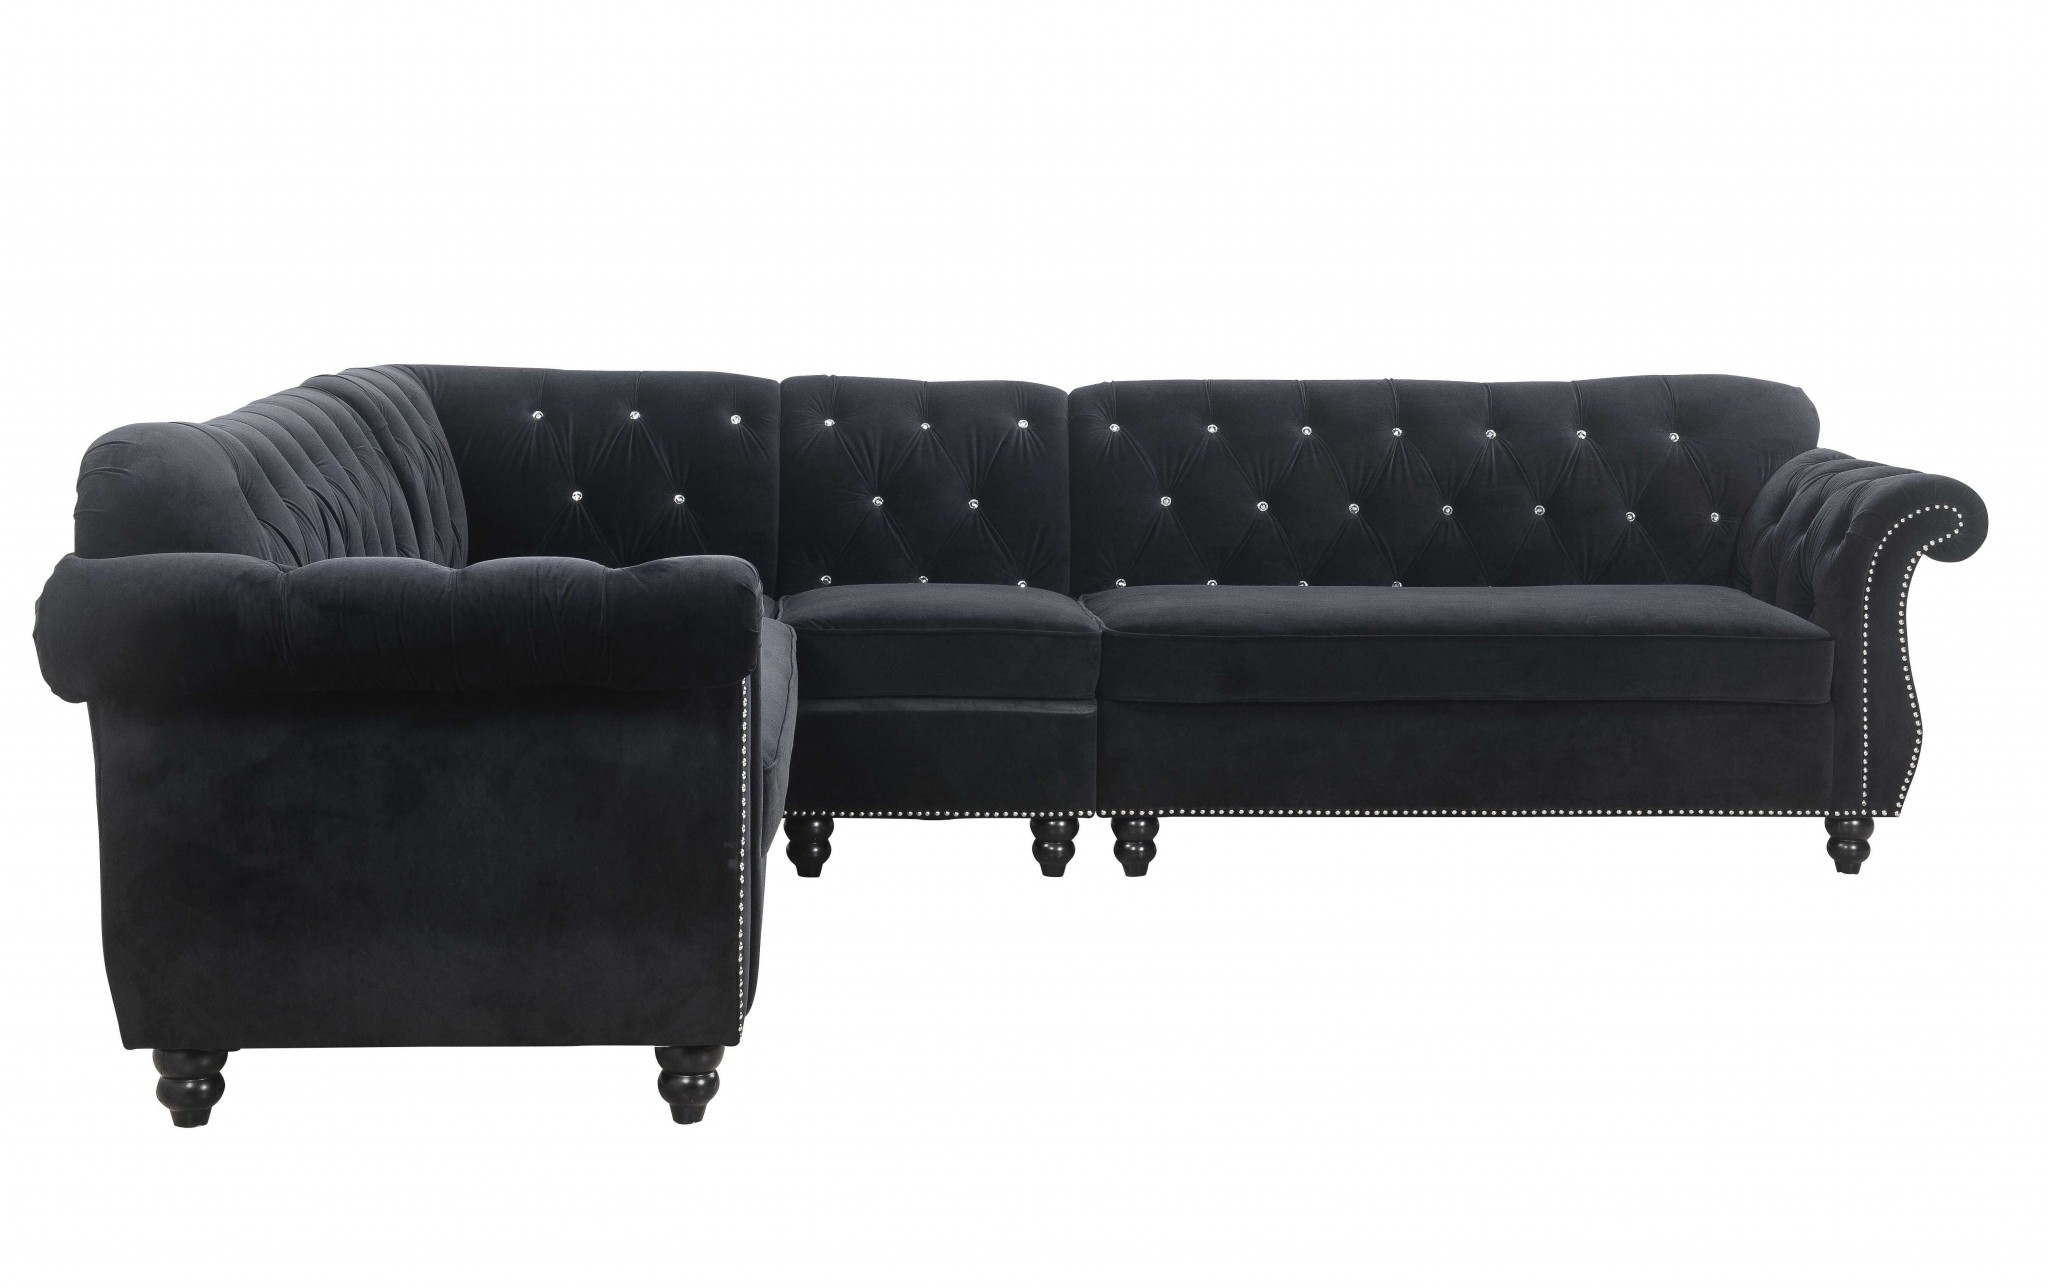 101" X 124" X 37" Black Velvet Upholstery Wood Leg Sectional Sofa